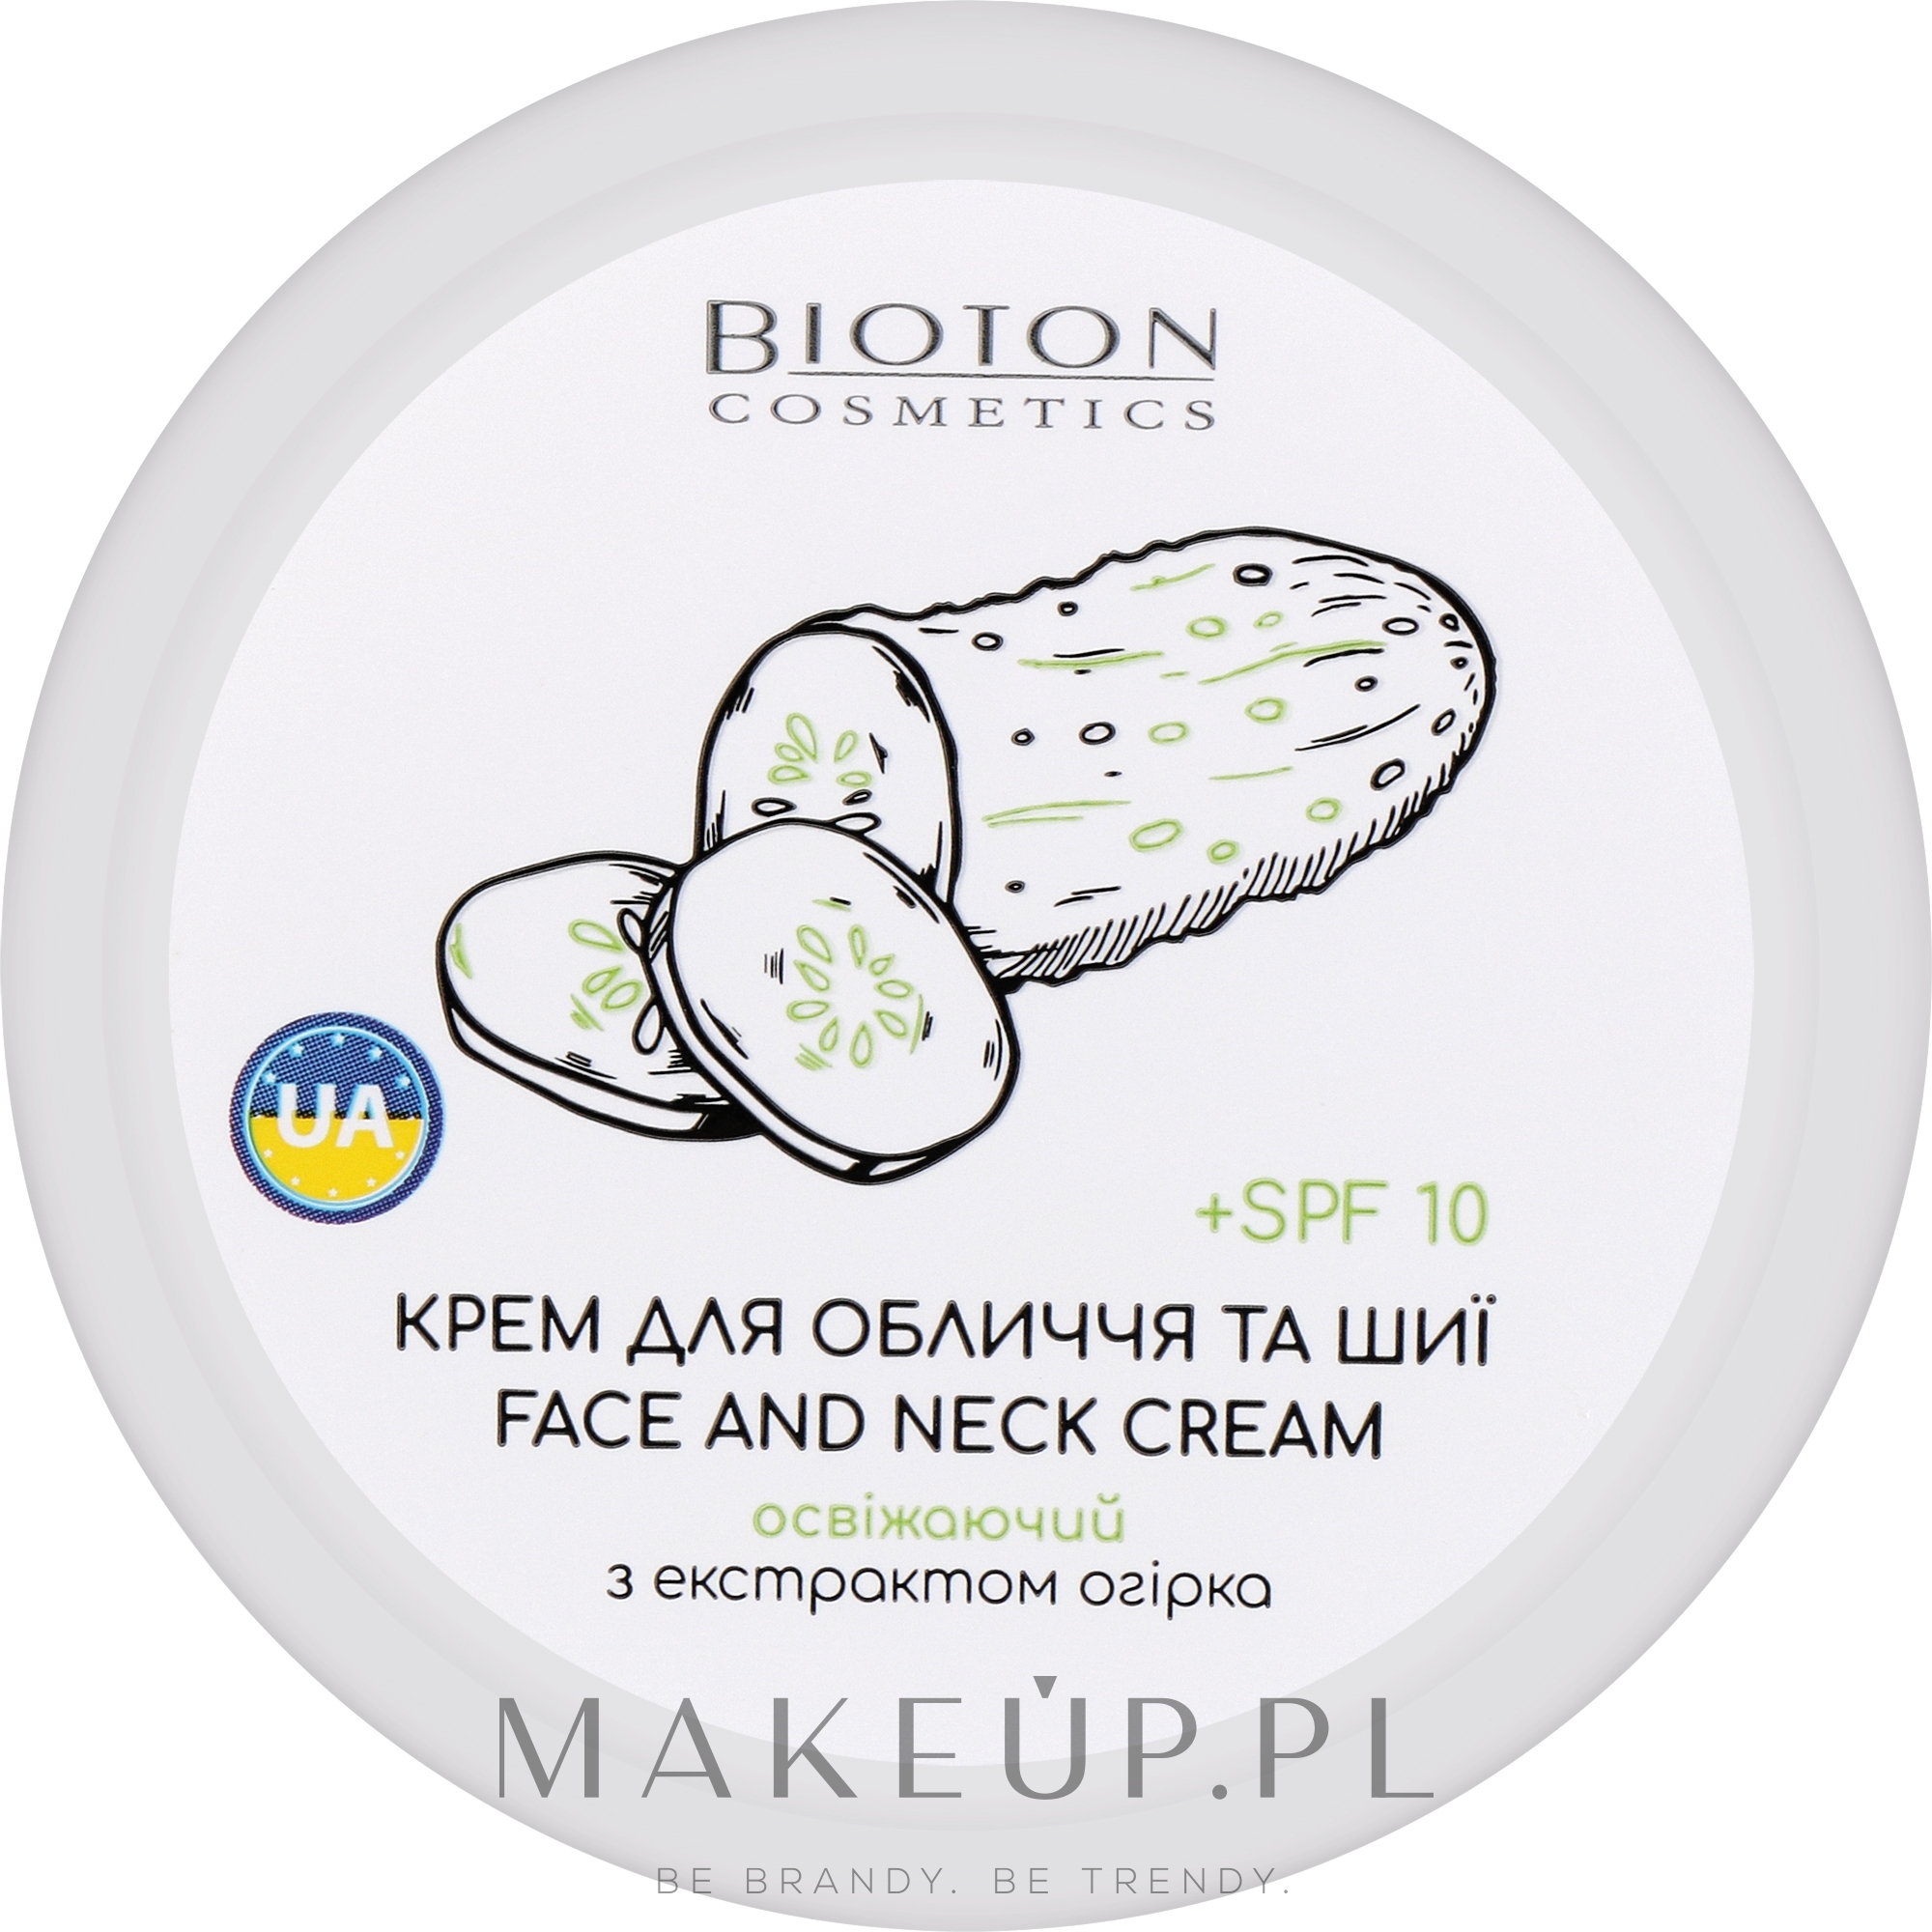 Krem do twarzy i szyi z ekstraktem z ogórka - Bioton Cosmetics Face & Neck Cream SPF 10 — Zdjęcie 100 ml